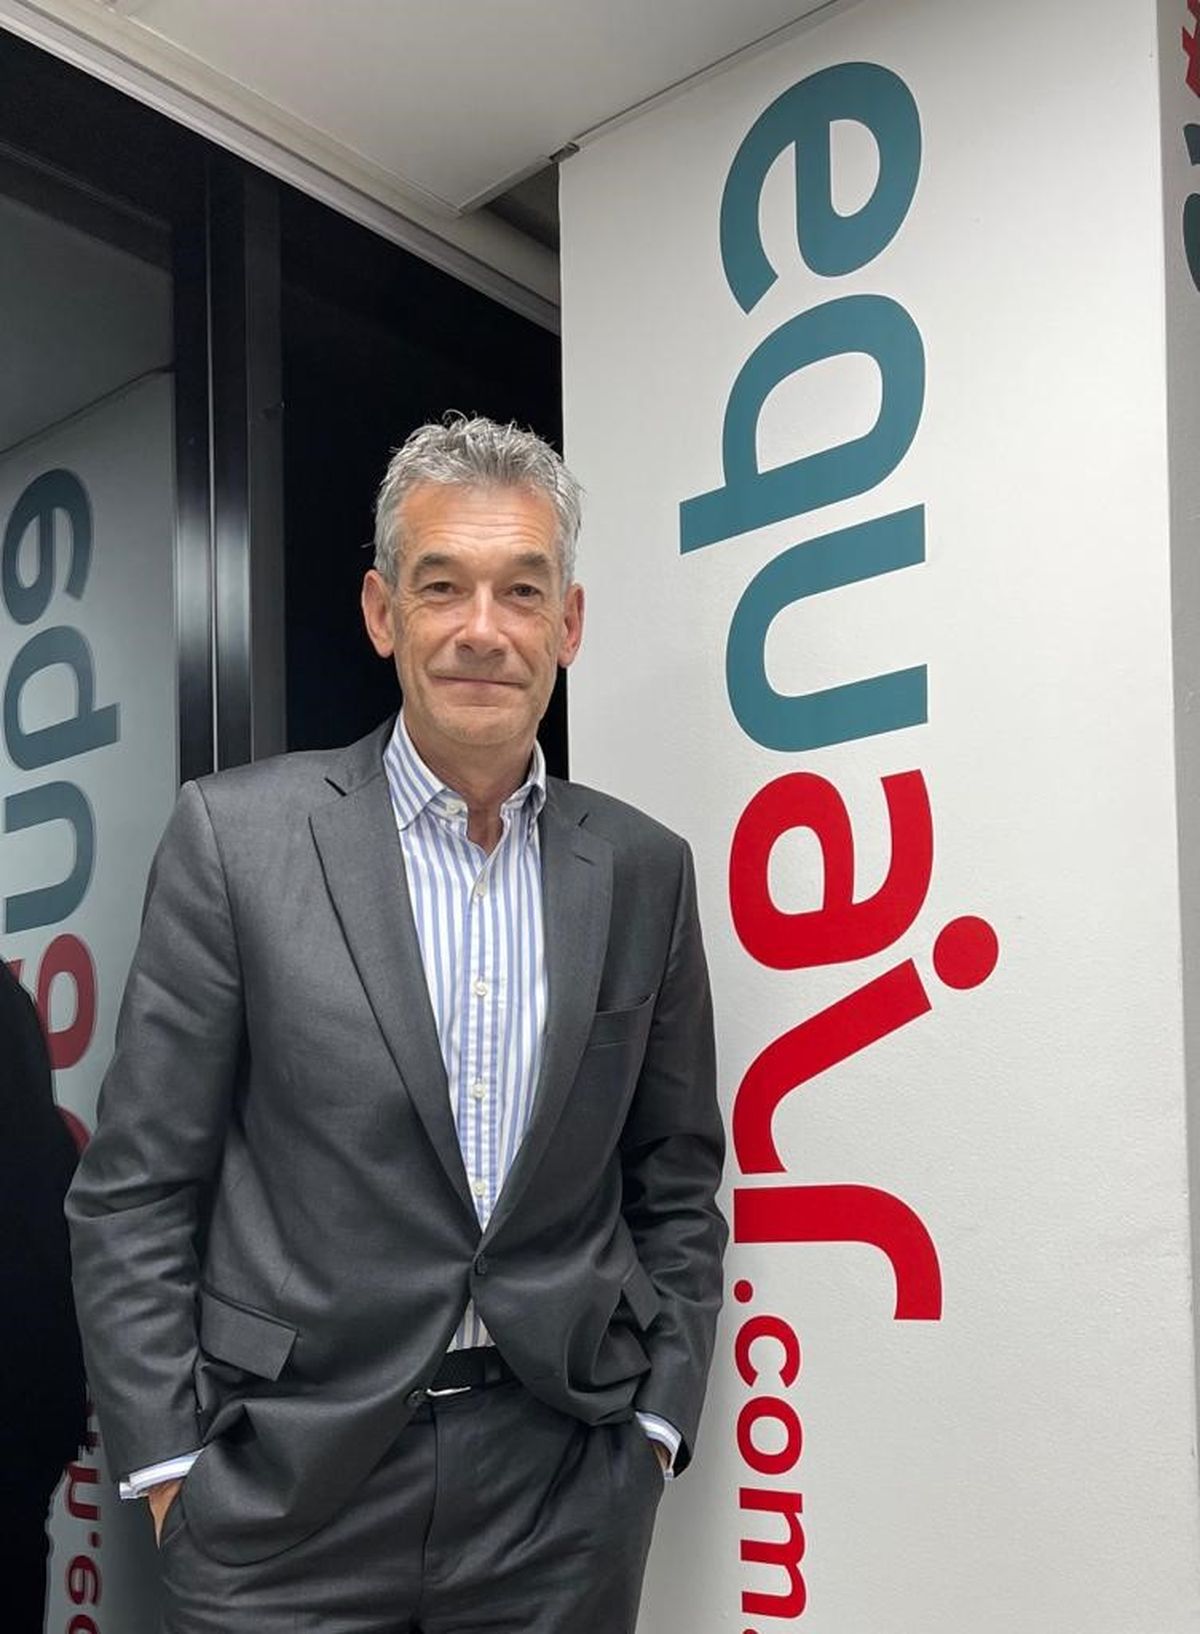 Frederik Jacobsen es el flamante CEO de Equair.